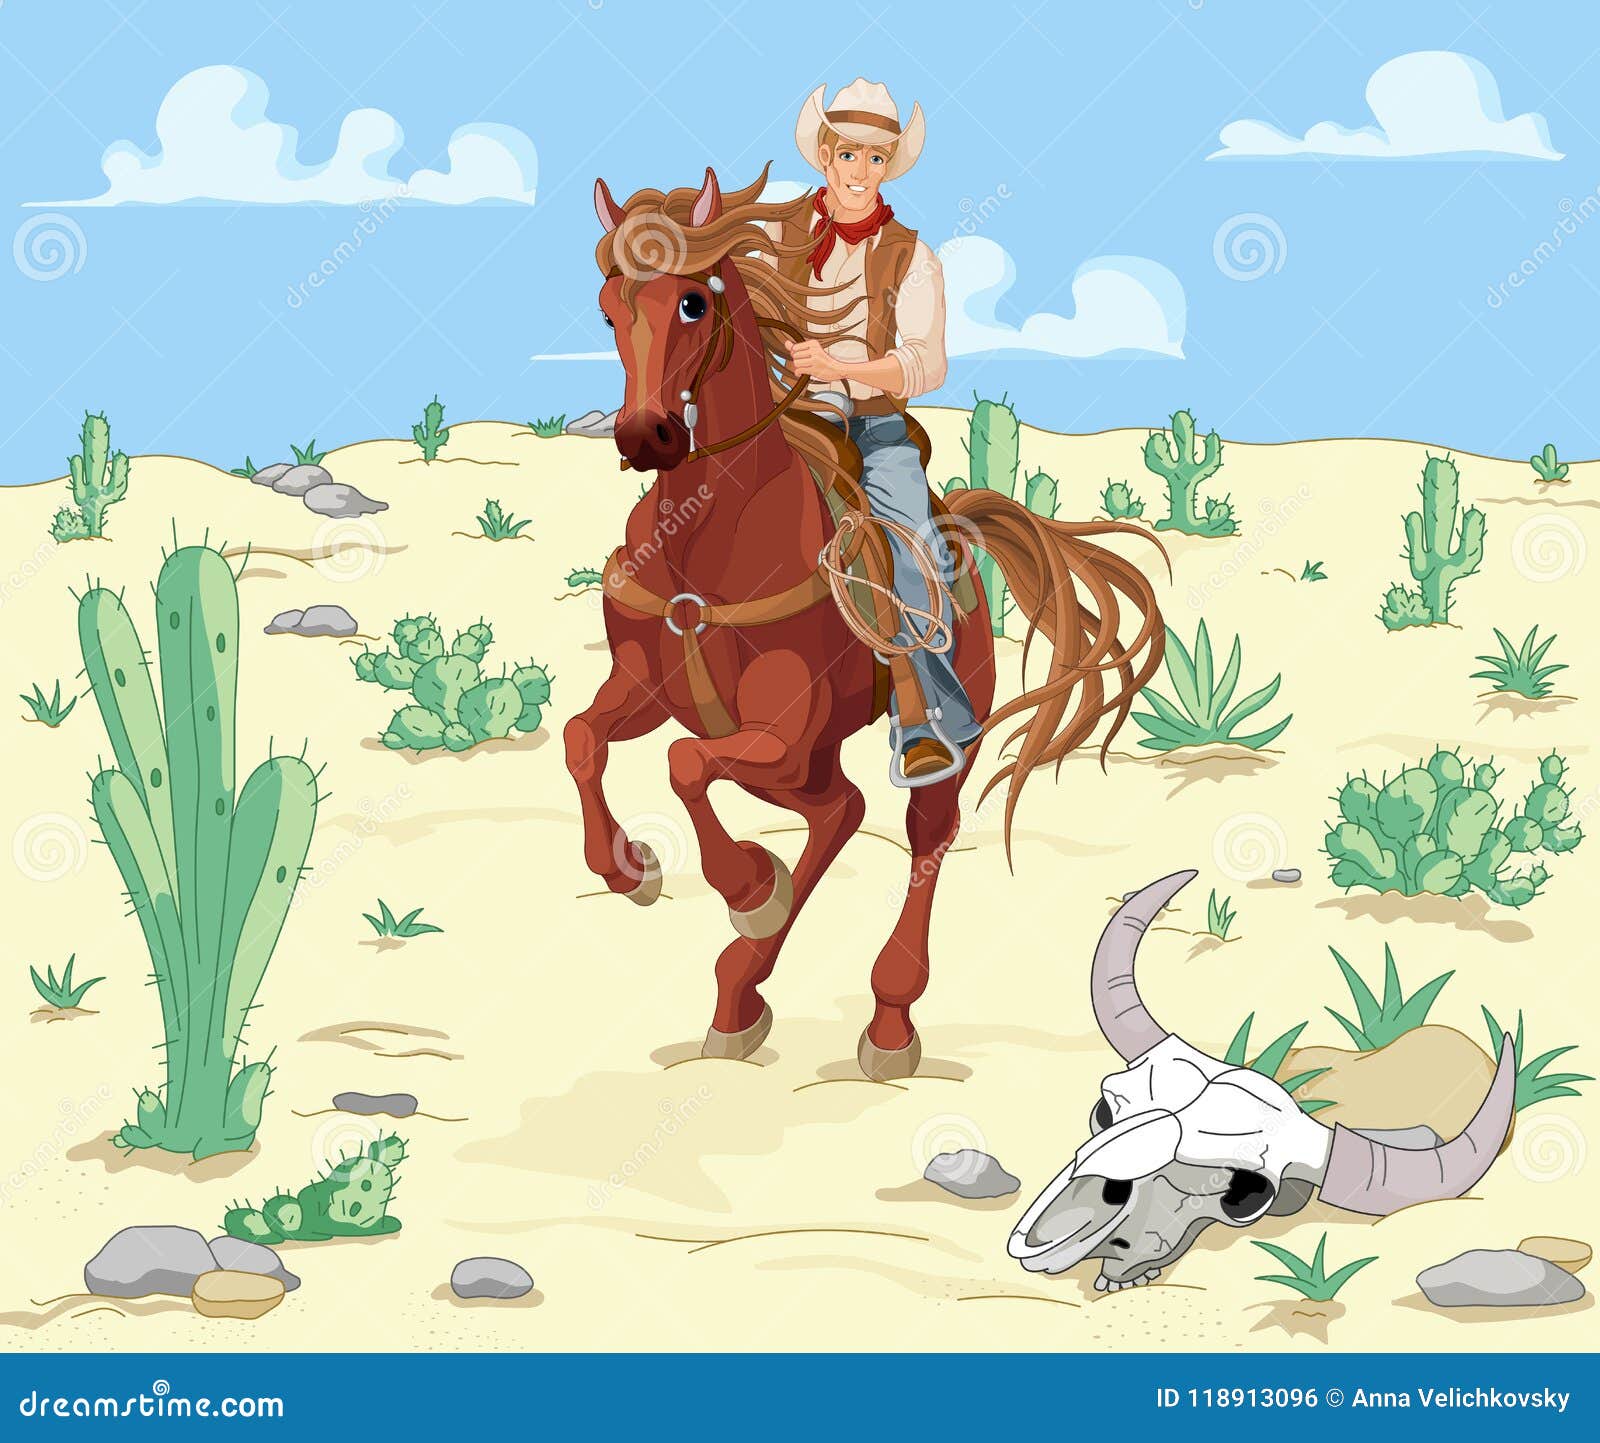 horse riding cowboy